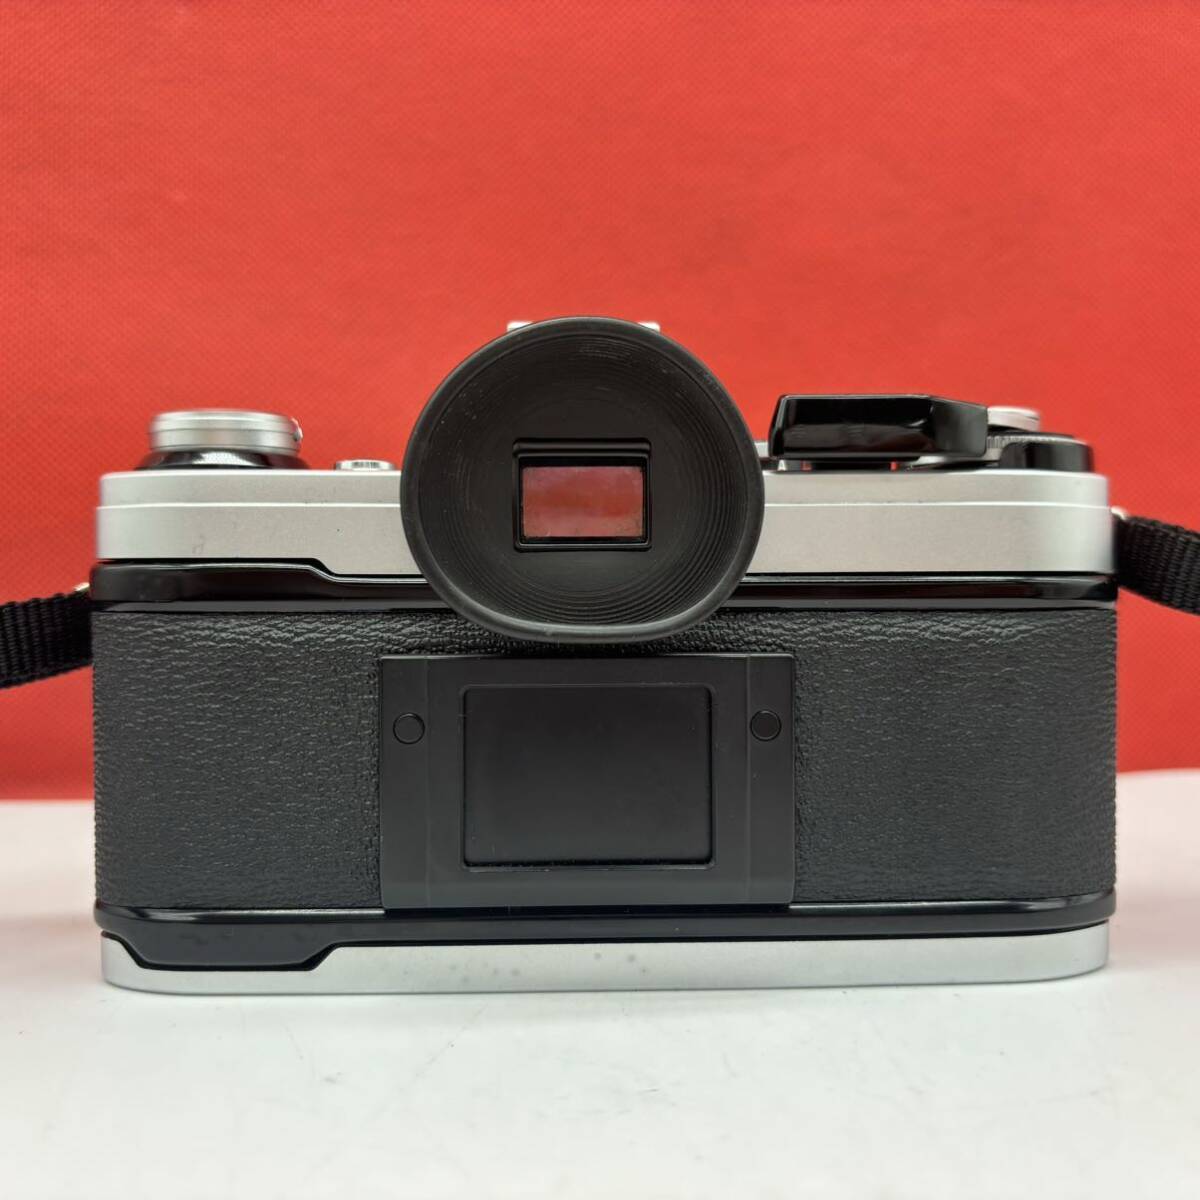 ◆ Canon AE-1 フィルムカメラ 一眼レフカメラ ボディ FD 50mm F1.4 S.S.C. レンズ シャッター、露出計OK キャノン_画像3